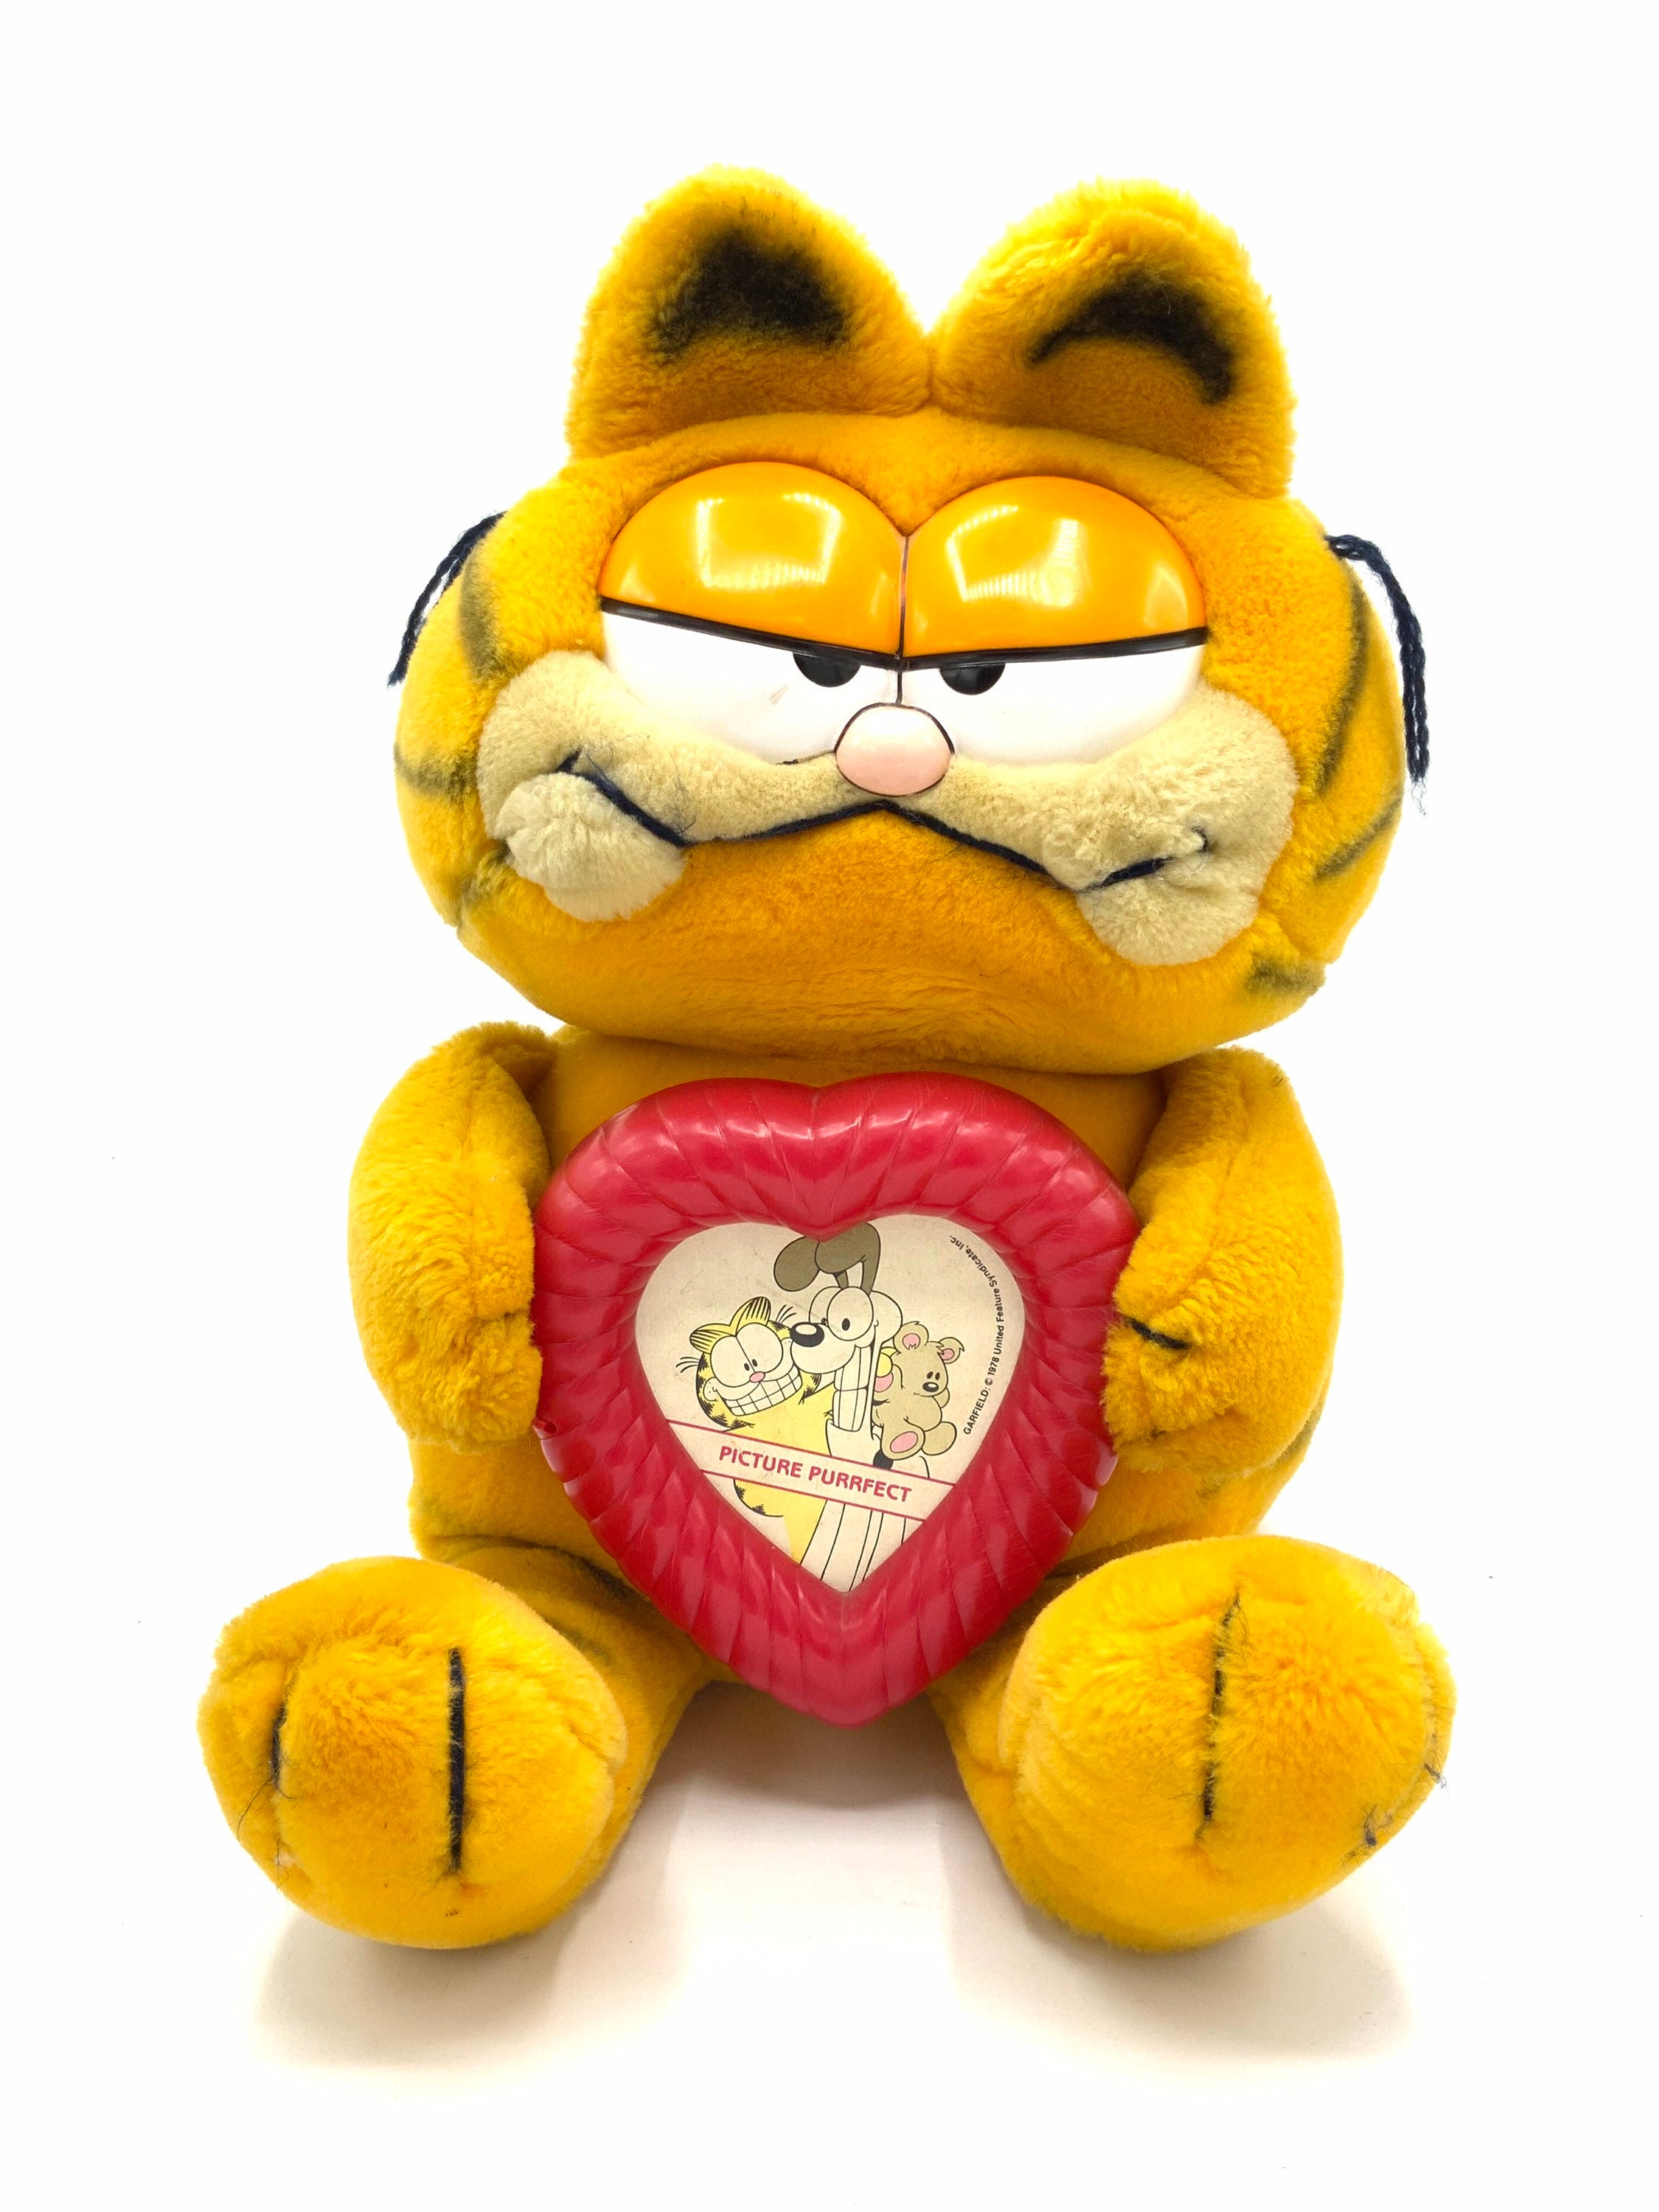 Magnifique peluche Garfield vintage de collection, tenant un cadre